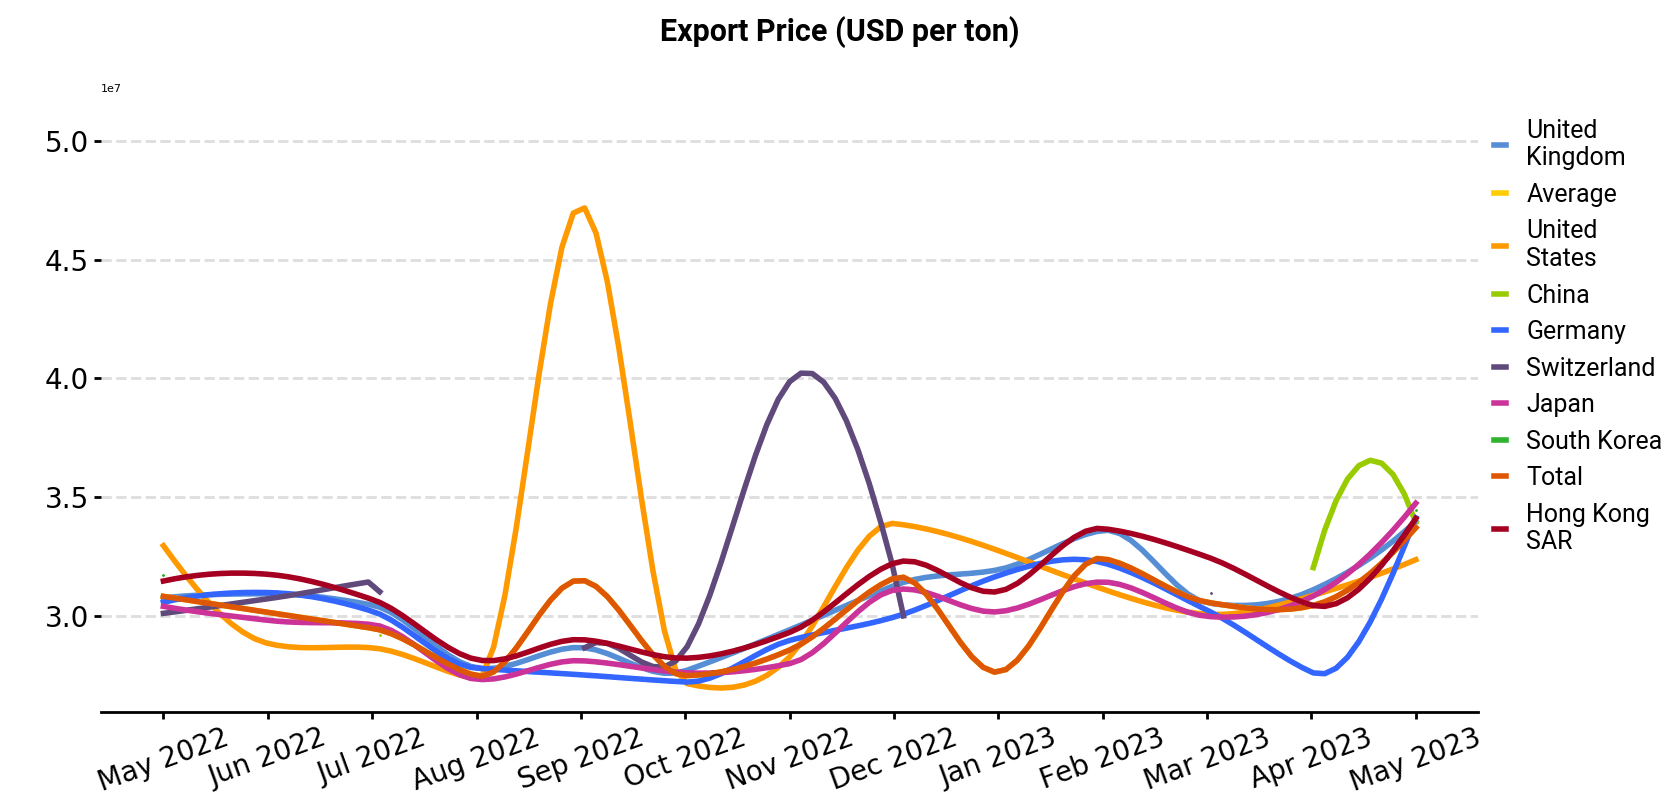 Export Price (USD per ton)